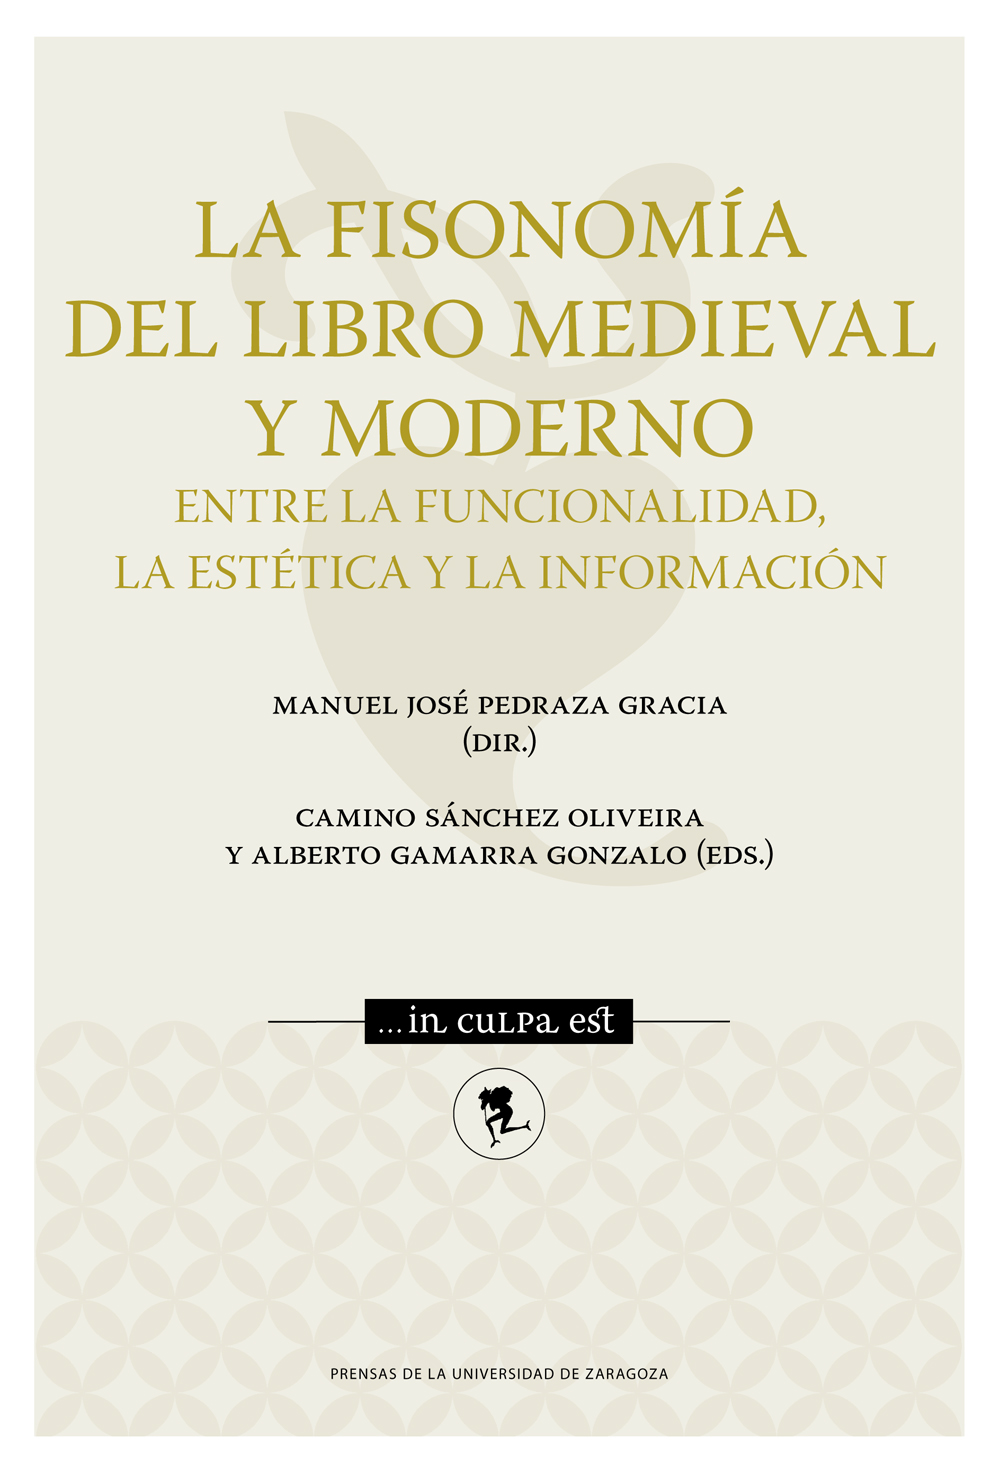 La fisonomía del libro medieval y moderno